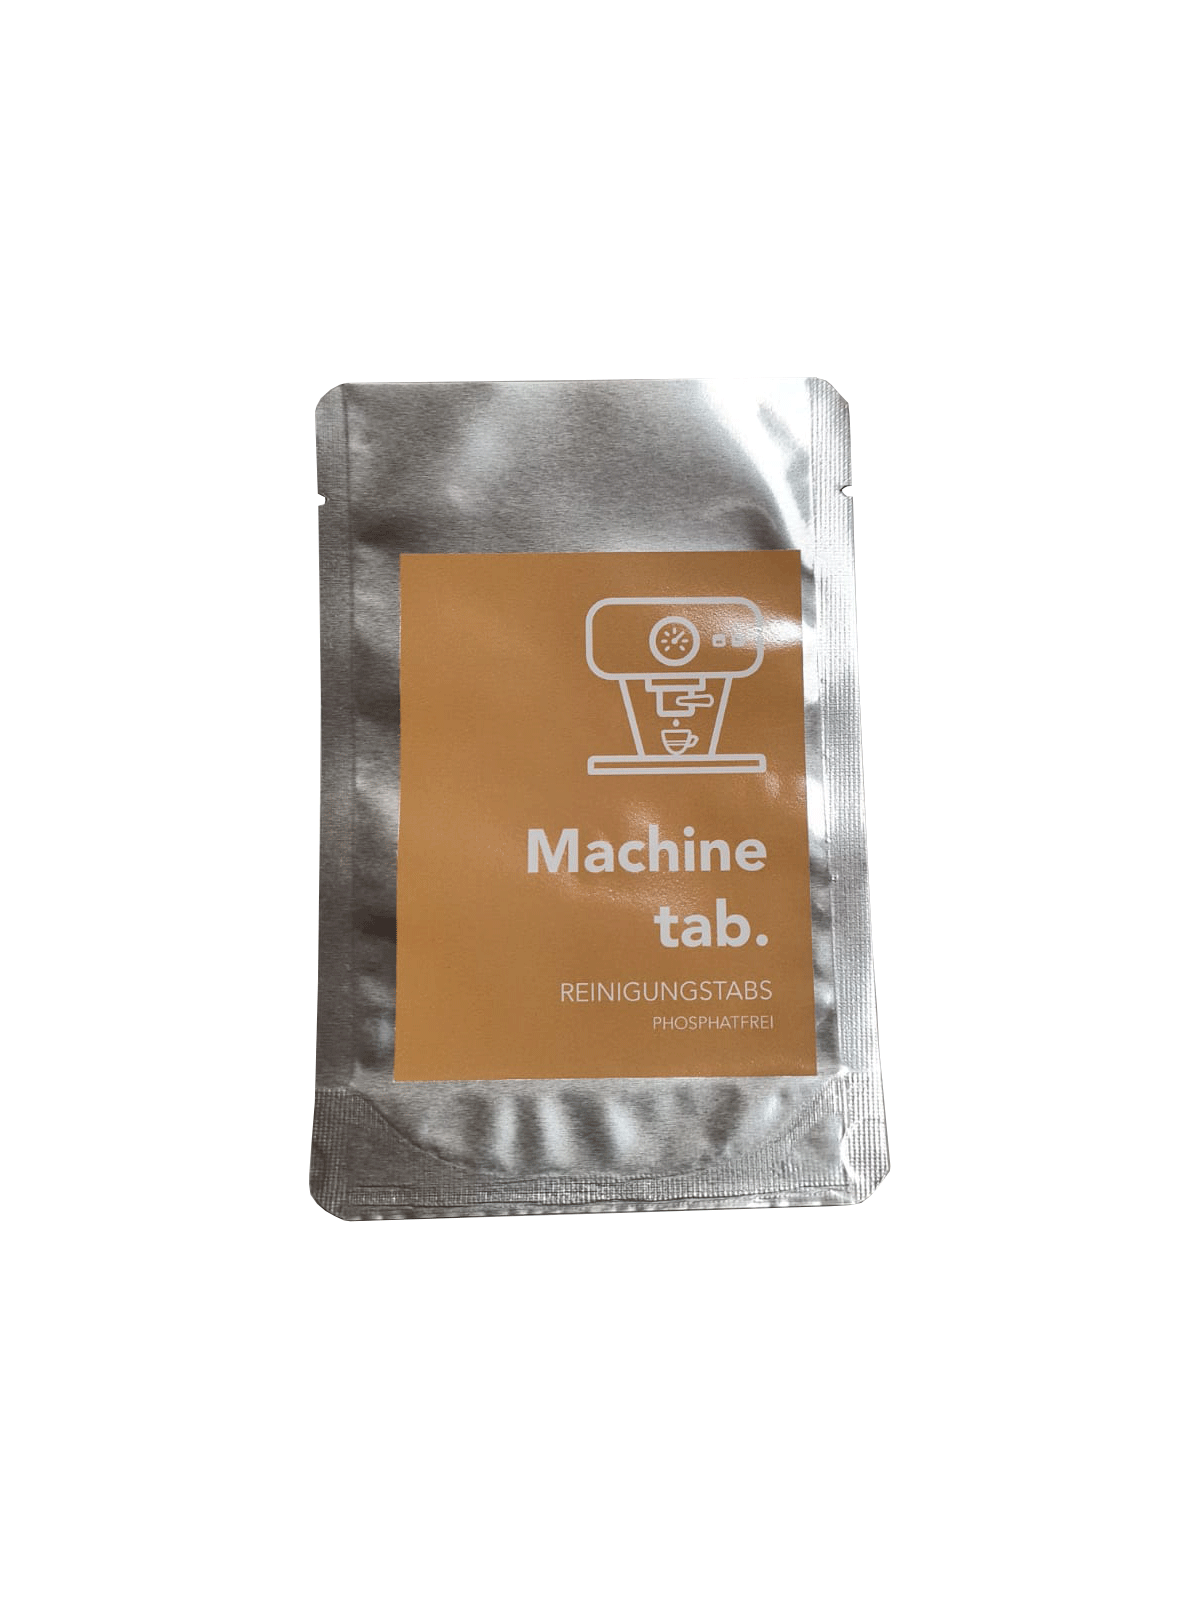 Machine Tab - Reinigungstabs phosphatfrei